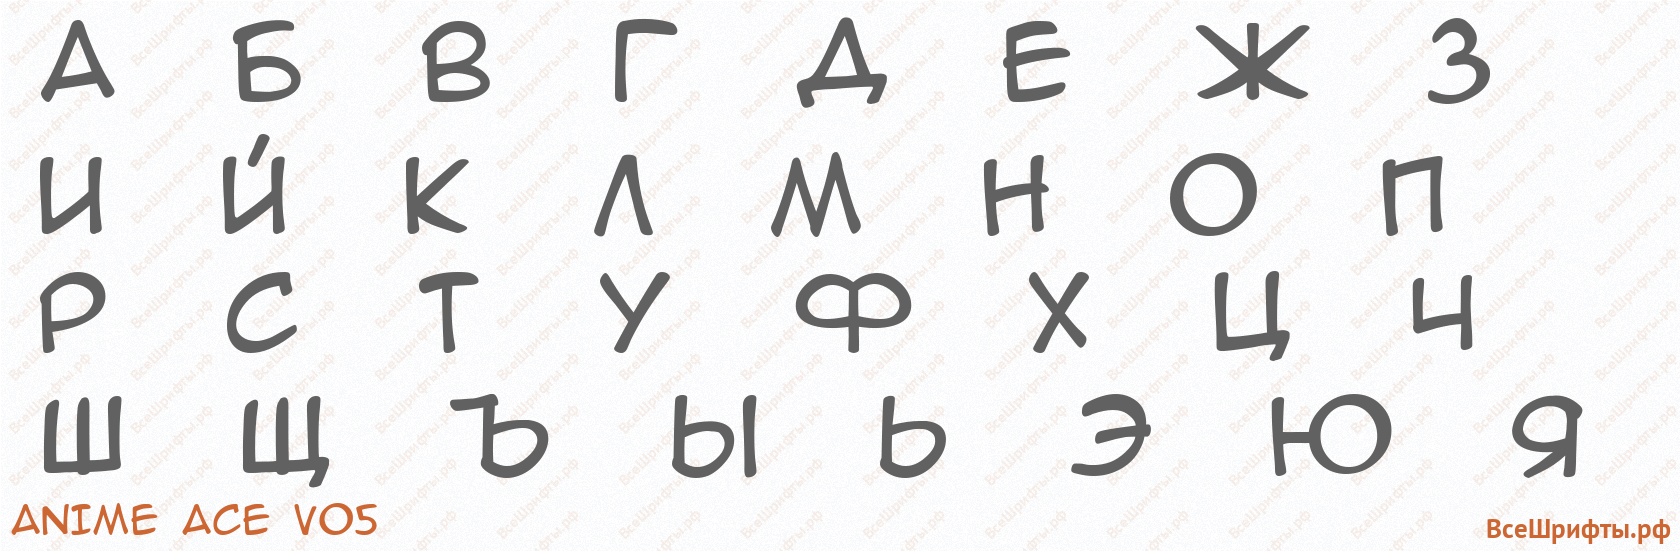 Шрифт Anime Ace v05 с русскими буквами